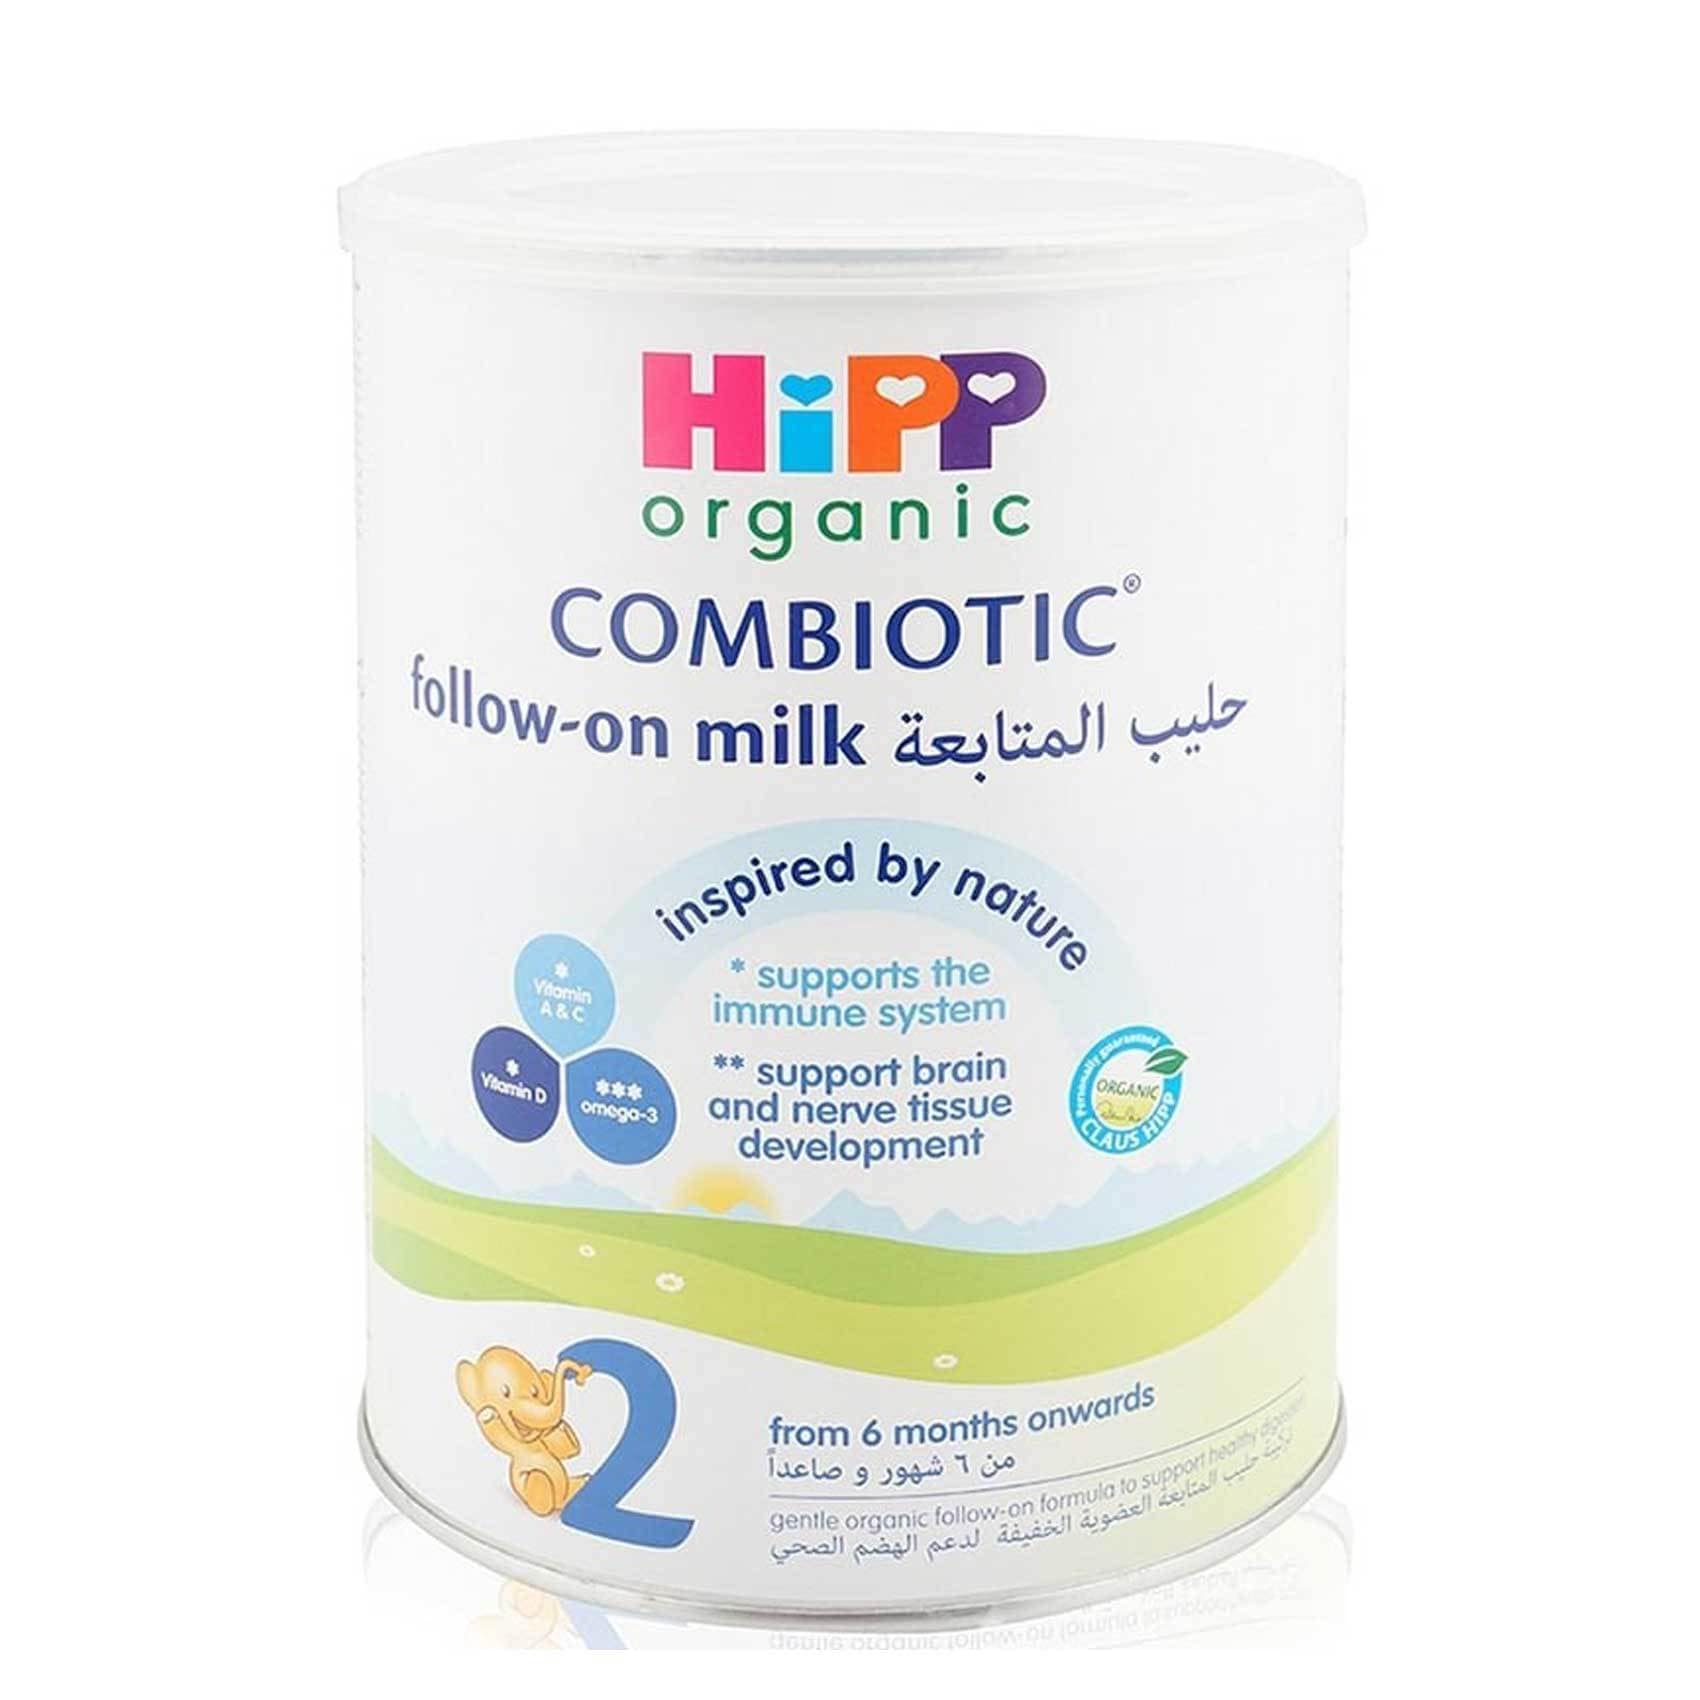 hipp combiotic organic